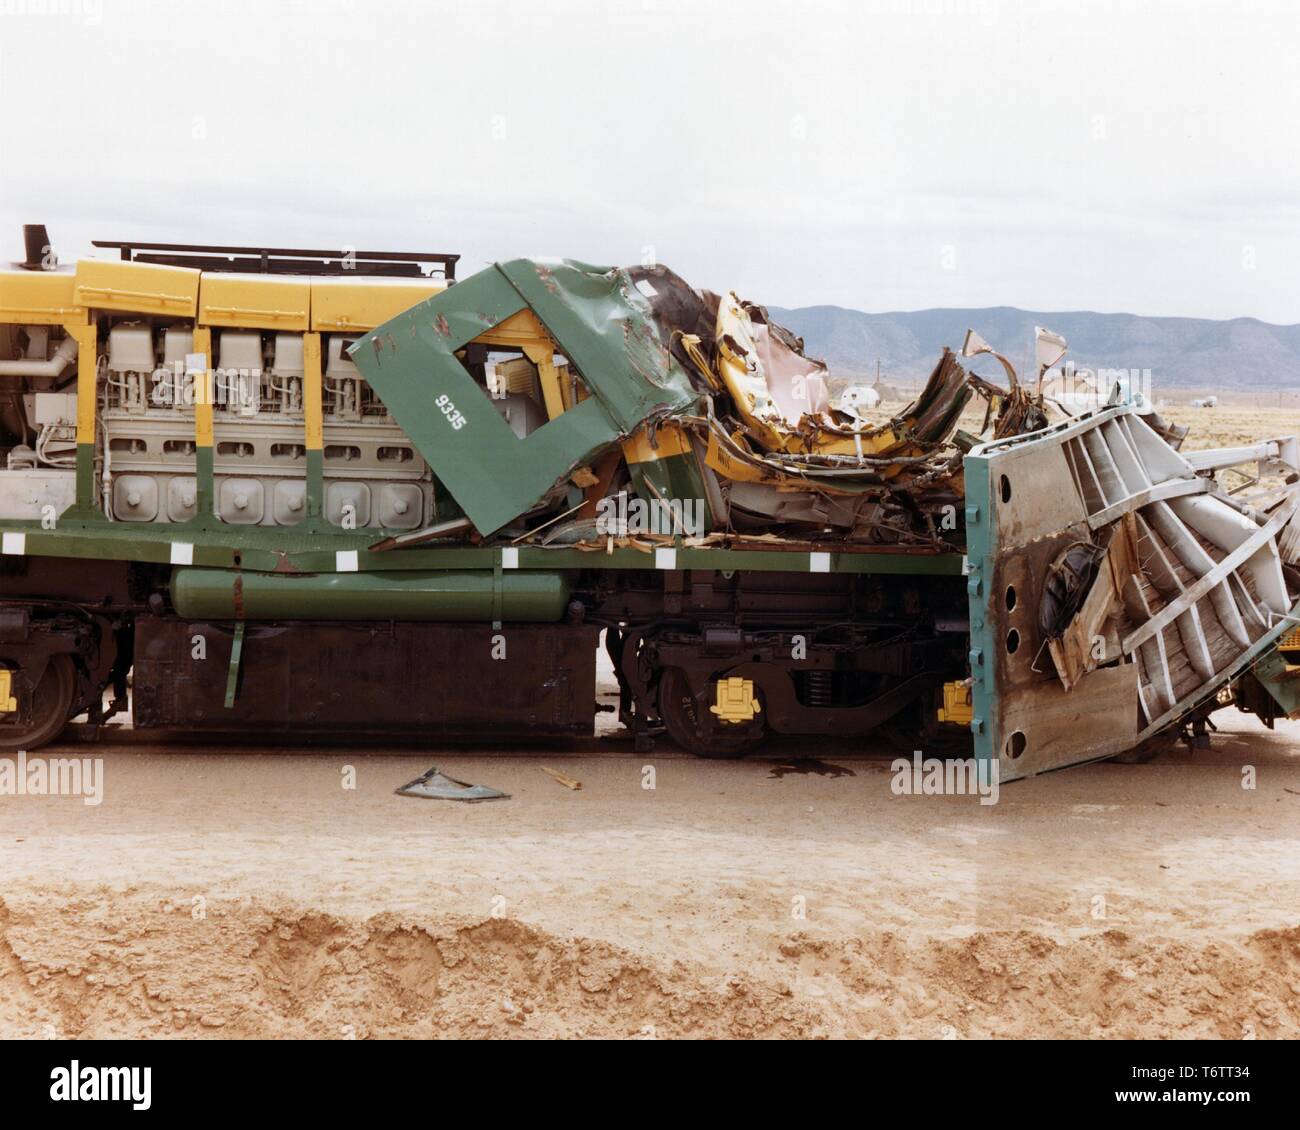 Profilansicht eines stark beschädigten Zug Motor nach einem Zusammenstoß mit einem Traktor - Anhänger eine abgebrannte Brennelemente cask beim Crash Test, Albuquerque, New Mexico, 1975. Mit freundlicher Genehmigung des US-Ministeriums für Energie. () Stockfoto